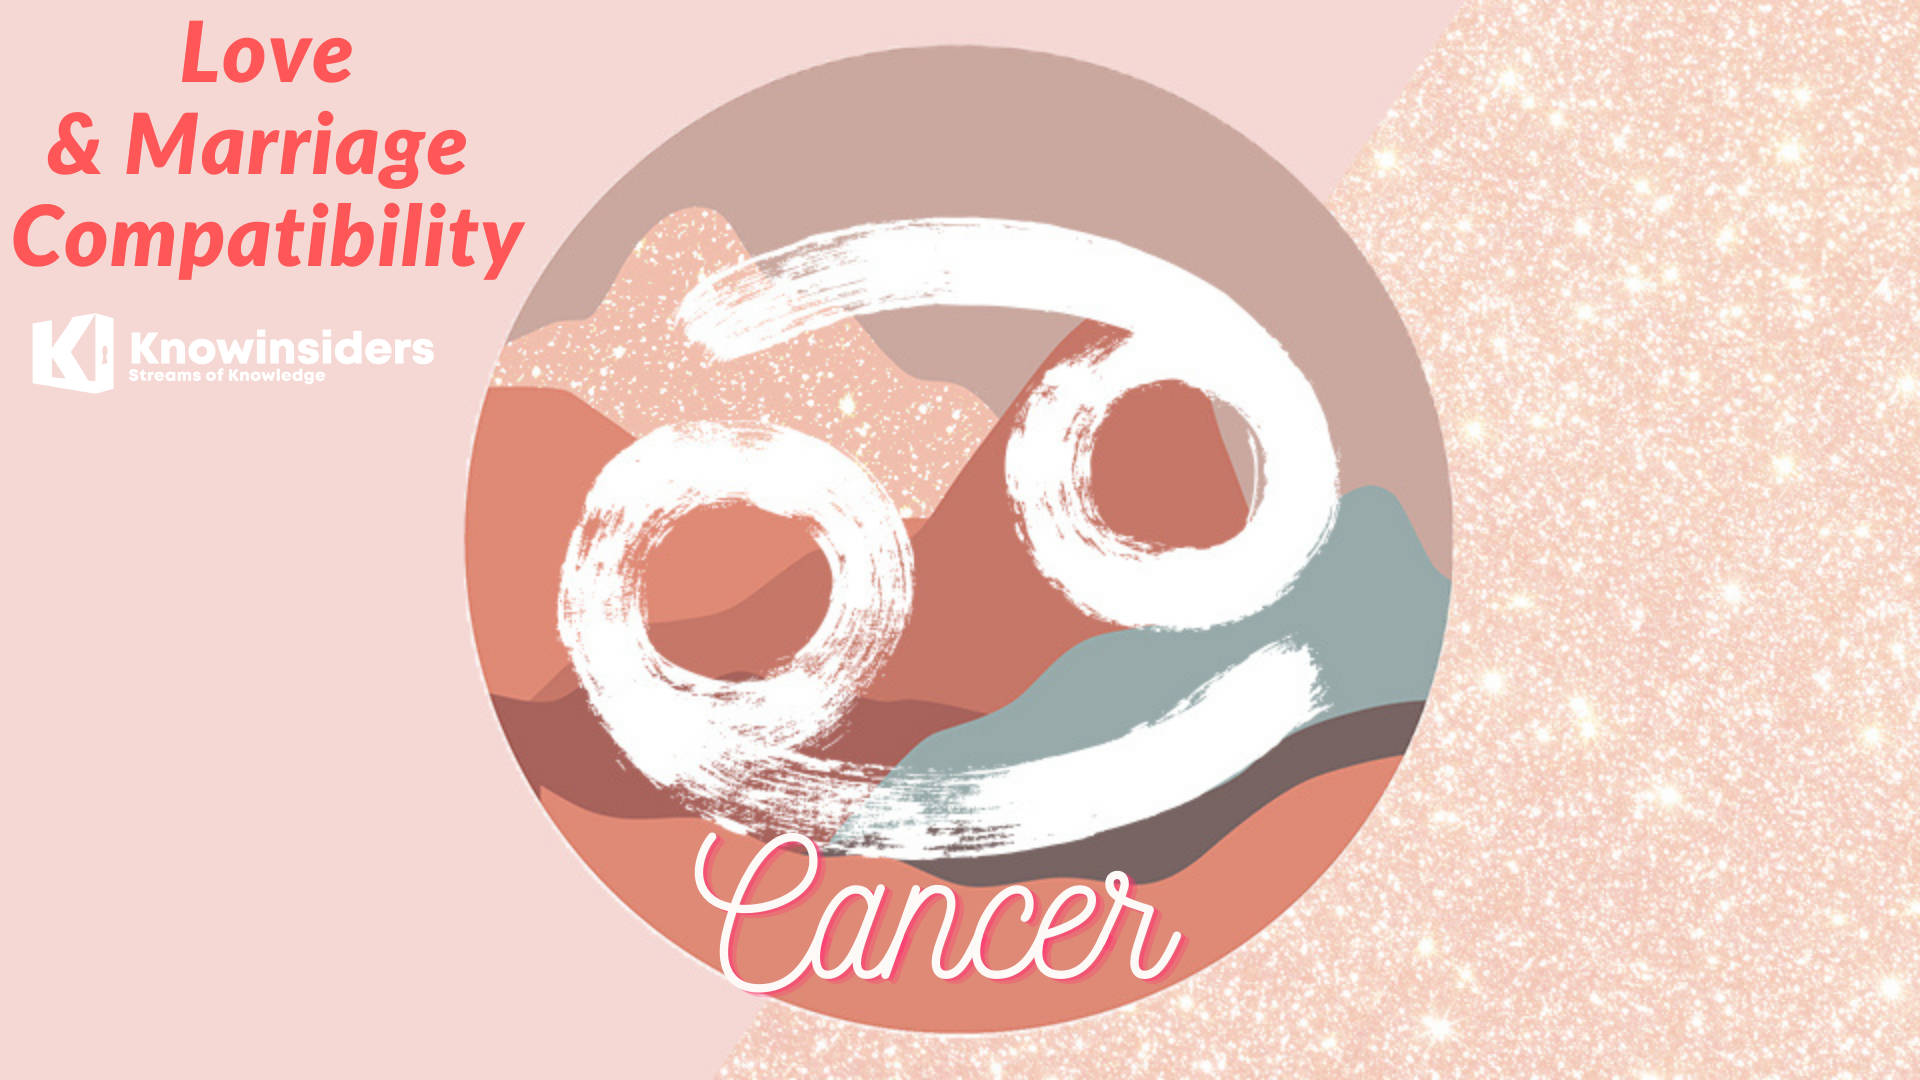 Tag imod din kræft-diagnose og find styrke i skønheden af din rejse. Wallpaper